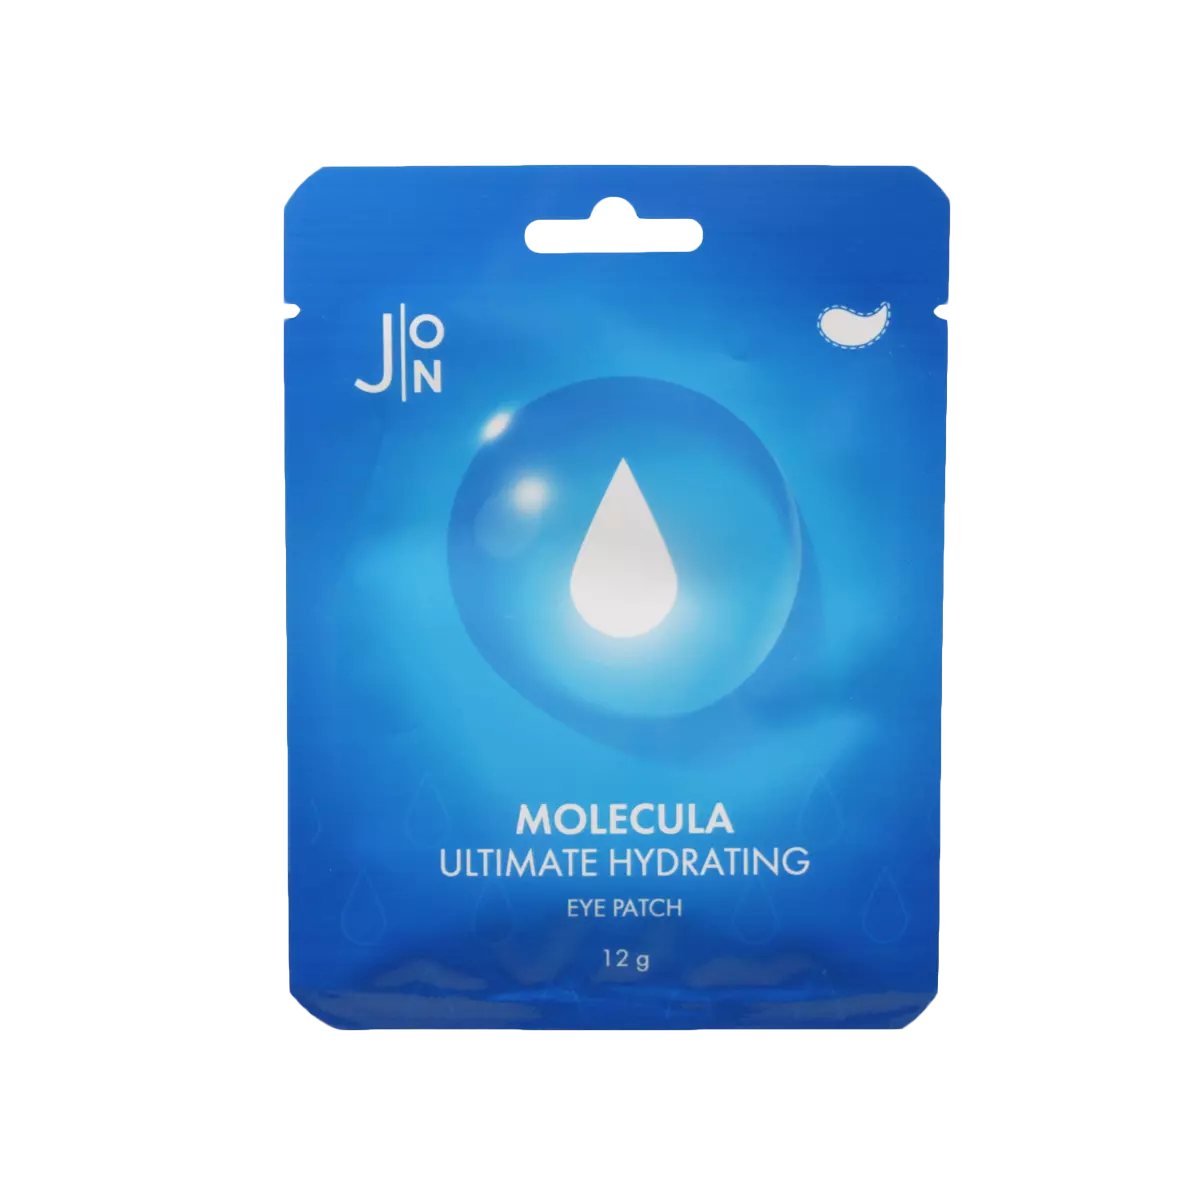 Увлажняющие патчи для век J:ON Molecula Ultimate Hydrating Eye Patch